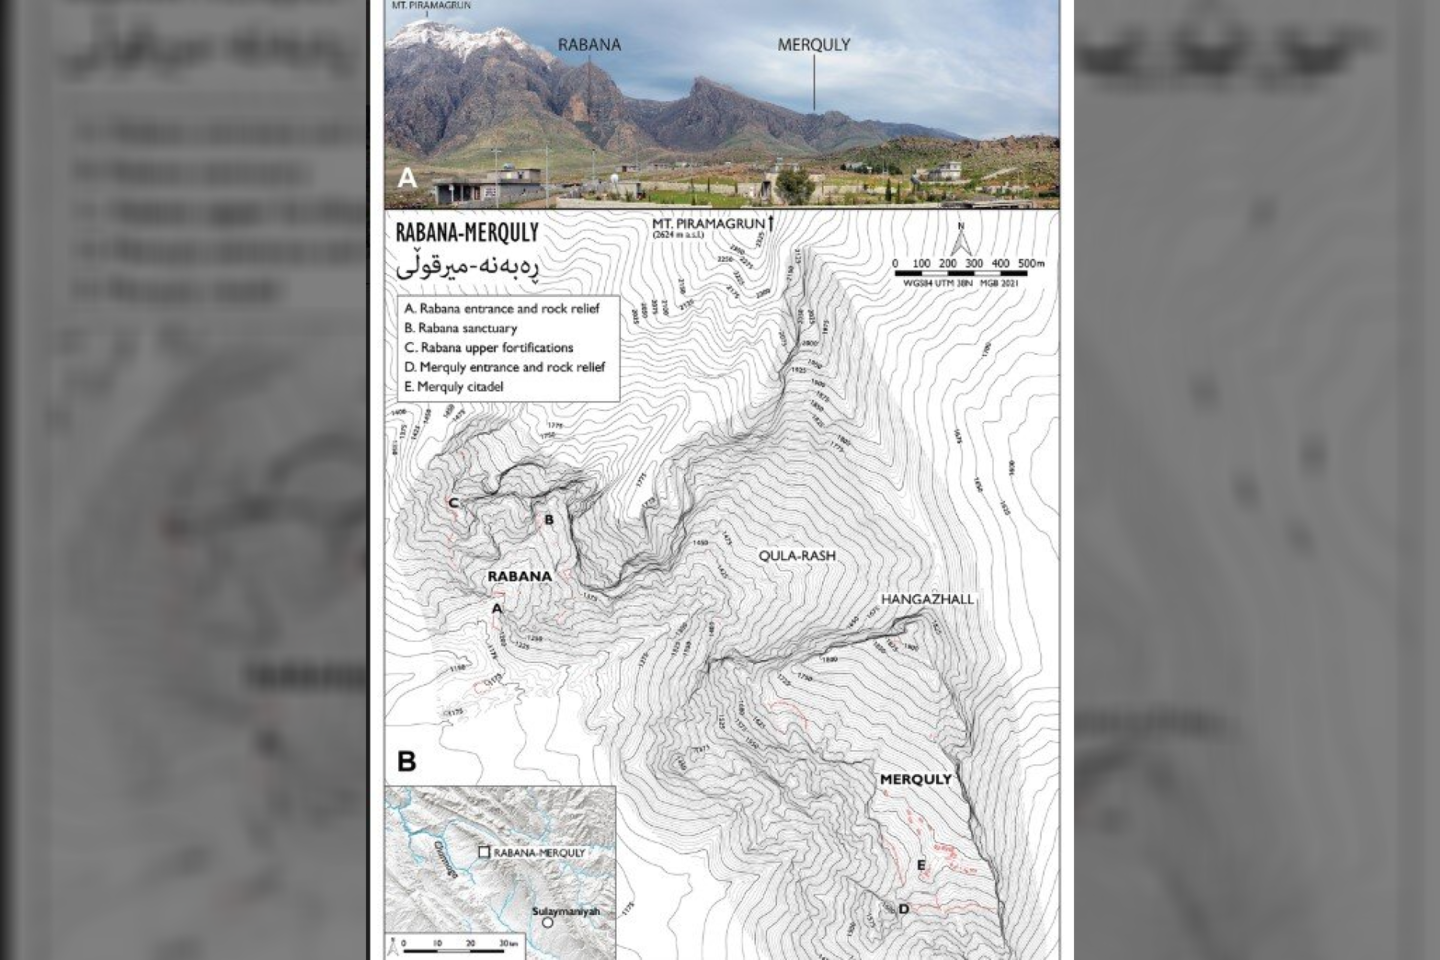  A) Piramagrūno kalnas, kuriame matyti pagrindinių Rabanos ir Merquly gyvenviečių išsidėstymas; B) Rabanos ir Merquly bendrasis planas<br> Rabanos-Marquly archeologinio projekto iliustr.